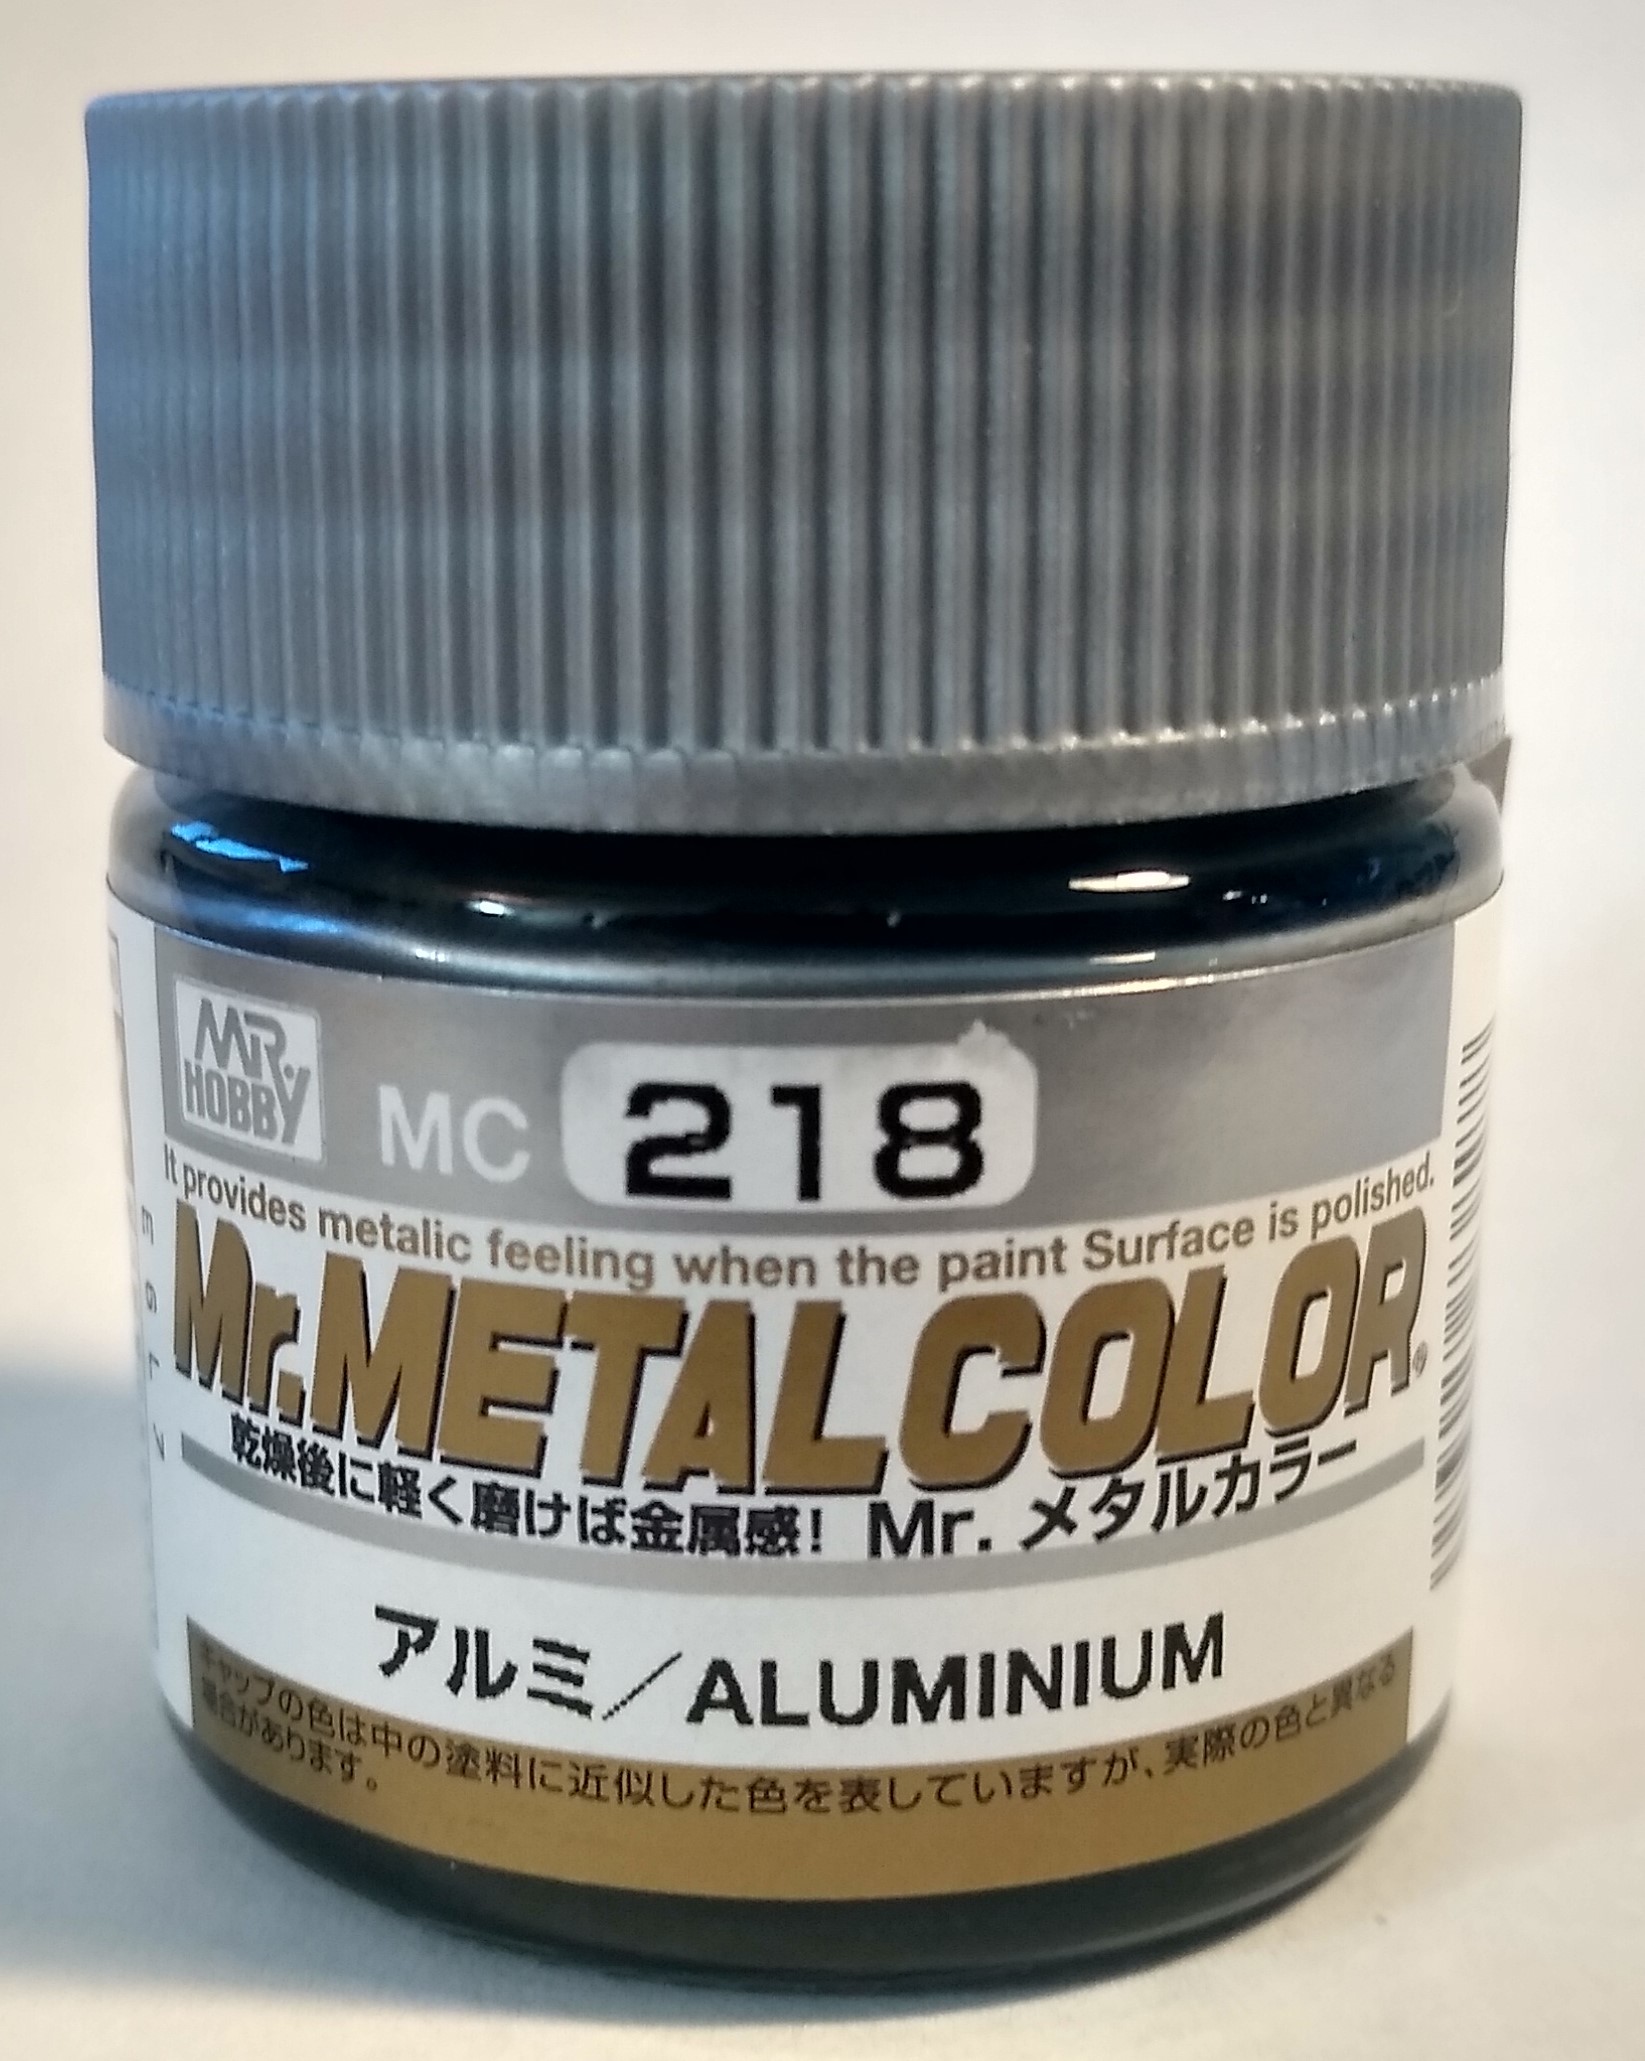 Pot of Mr. Metal Color Aluminum Paint